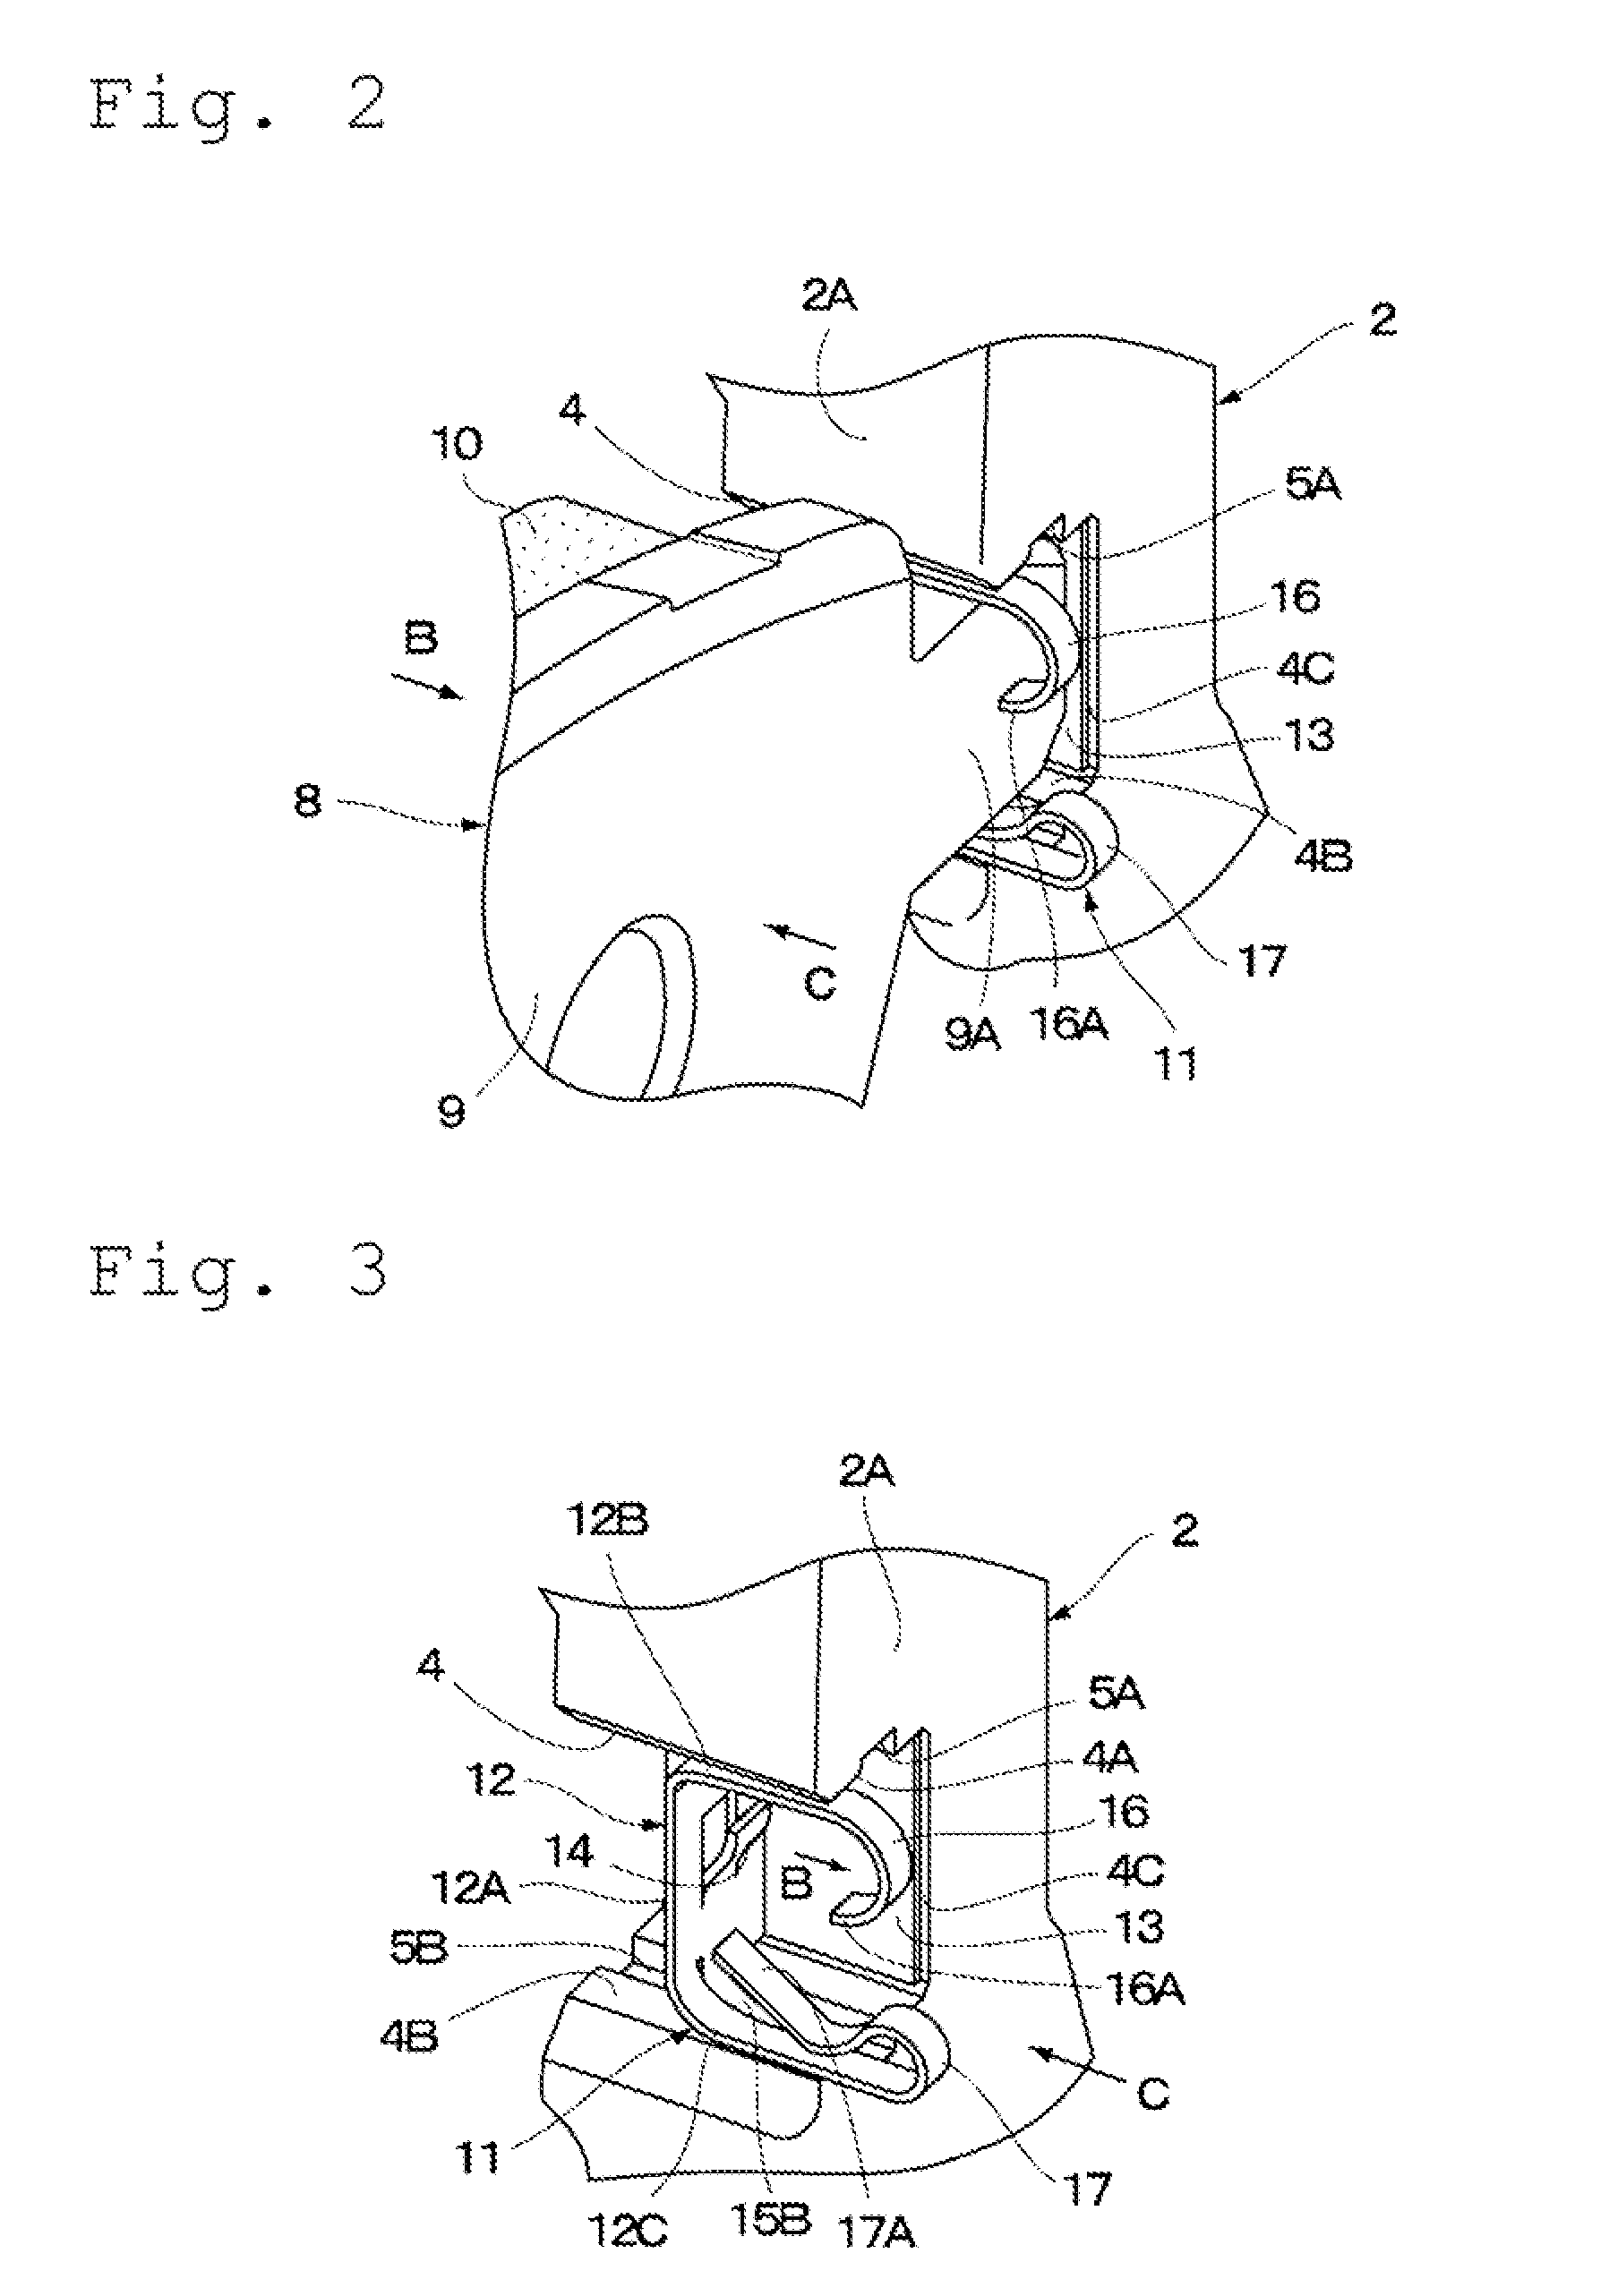 Disc brake apparatus